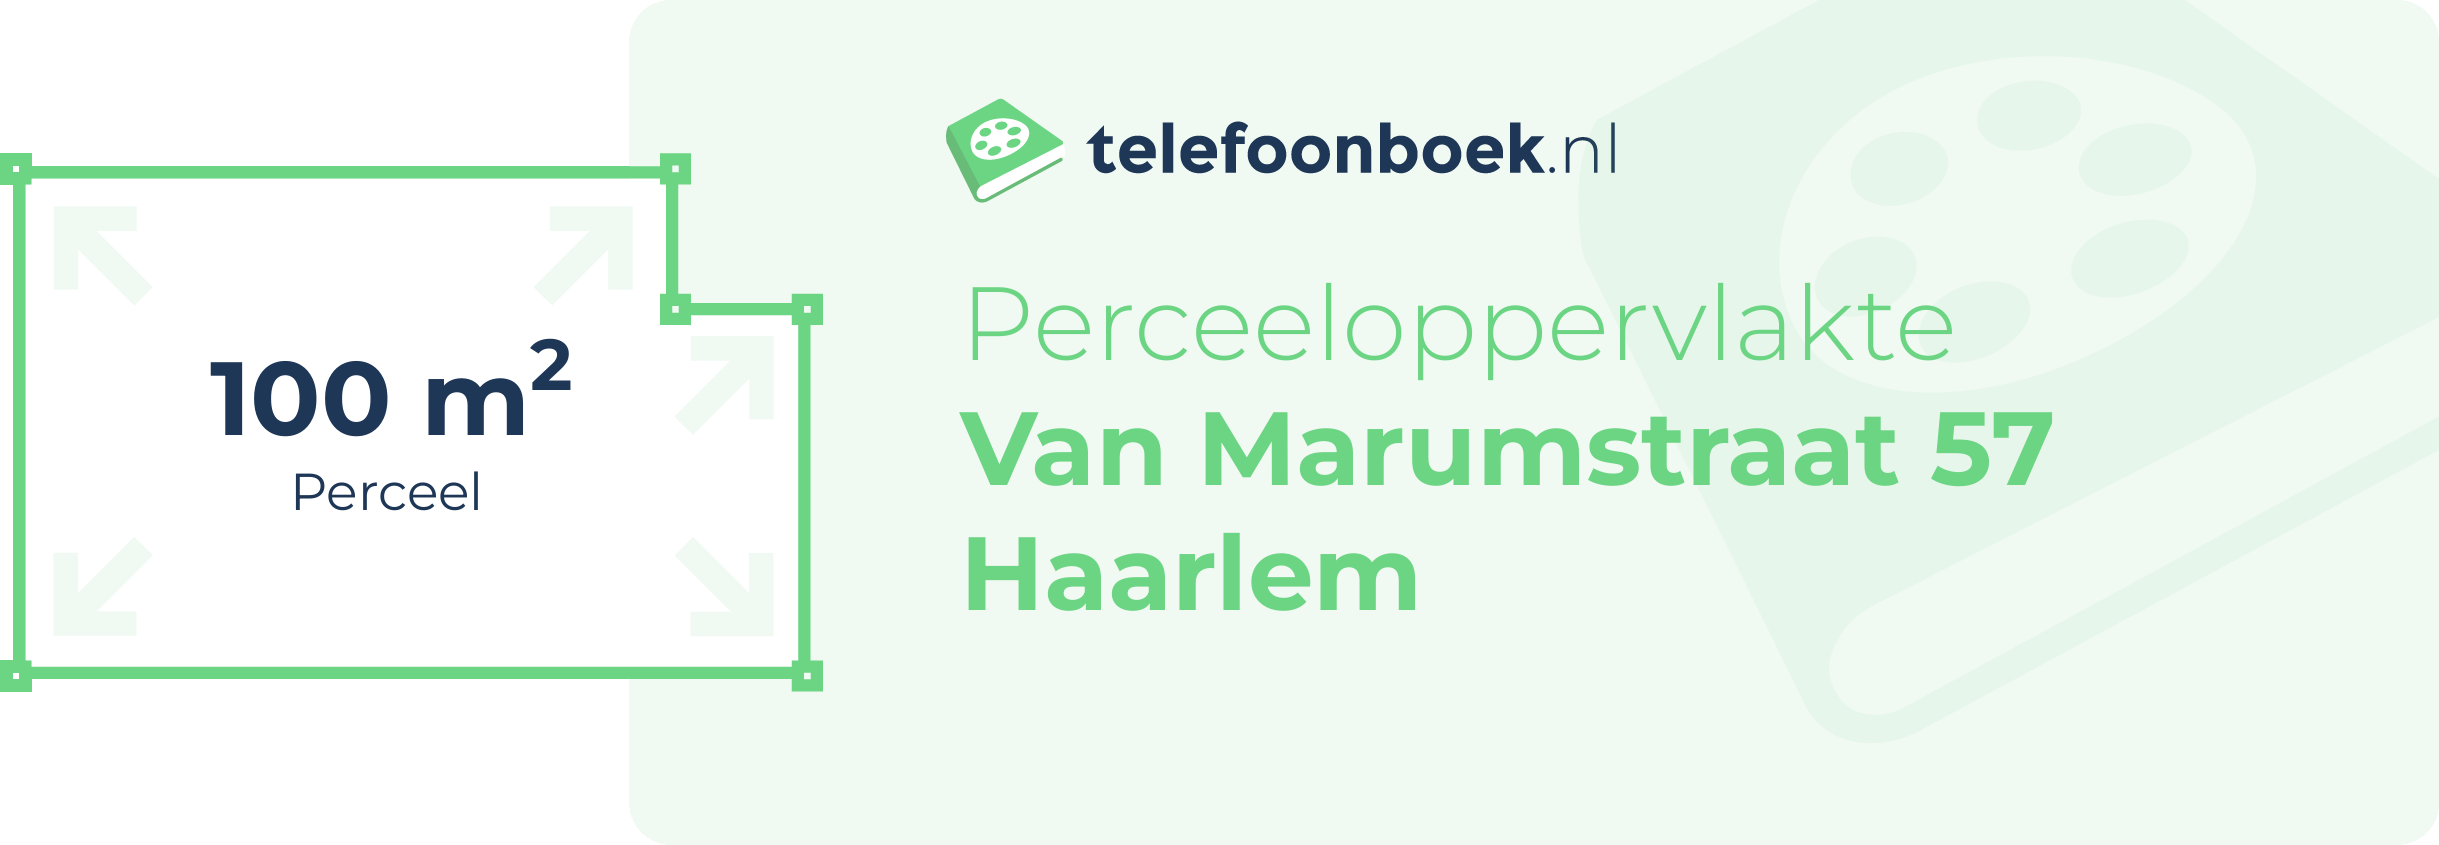 Perceeloppervlakte Van Marumstraat 57 Haarlem